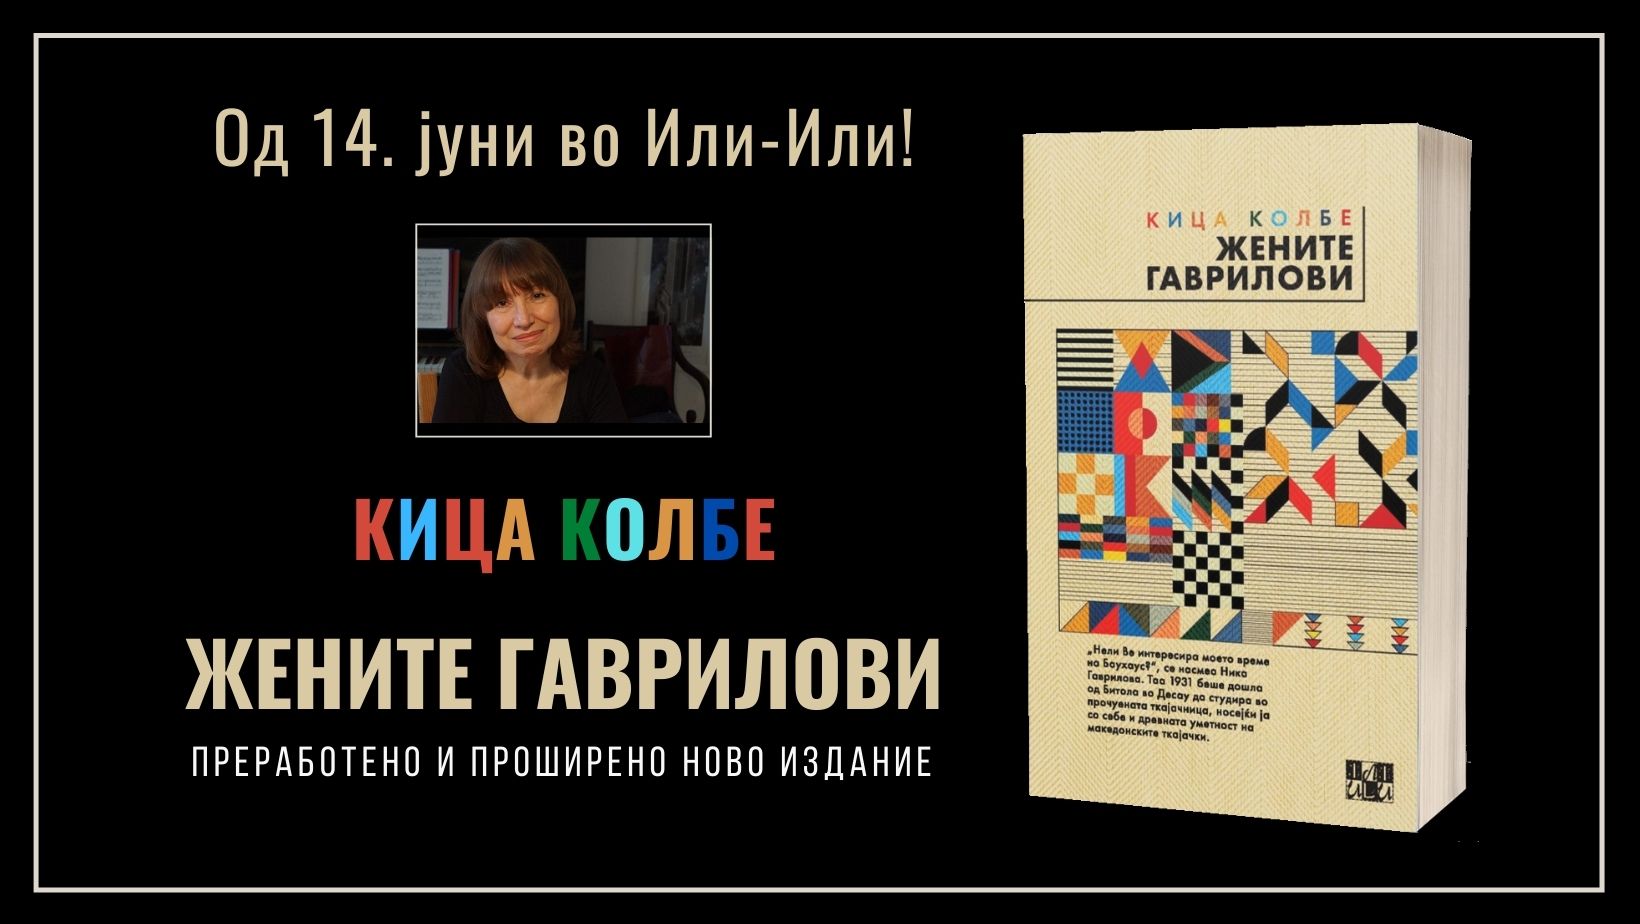 Нова книга од ИЛИ-ИЛИ: „Жените Гаврилови“ од Кица Колбе